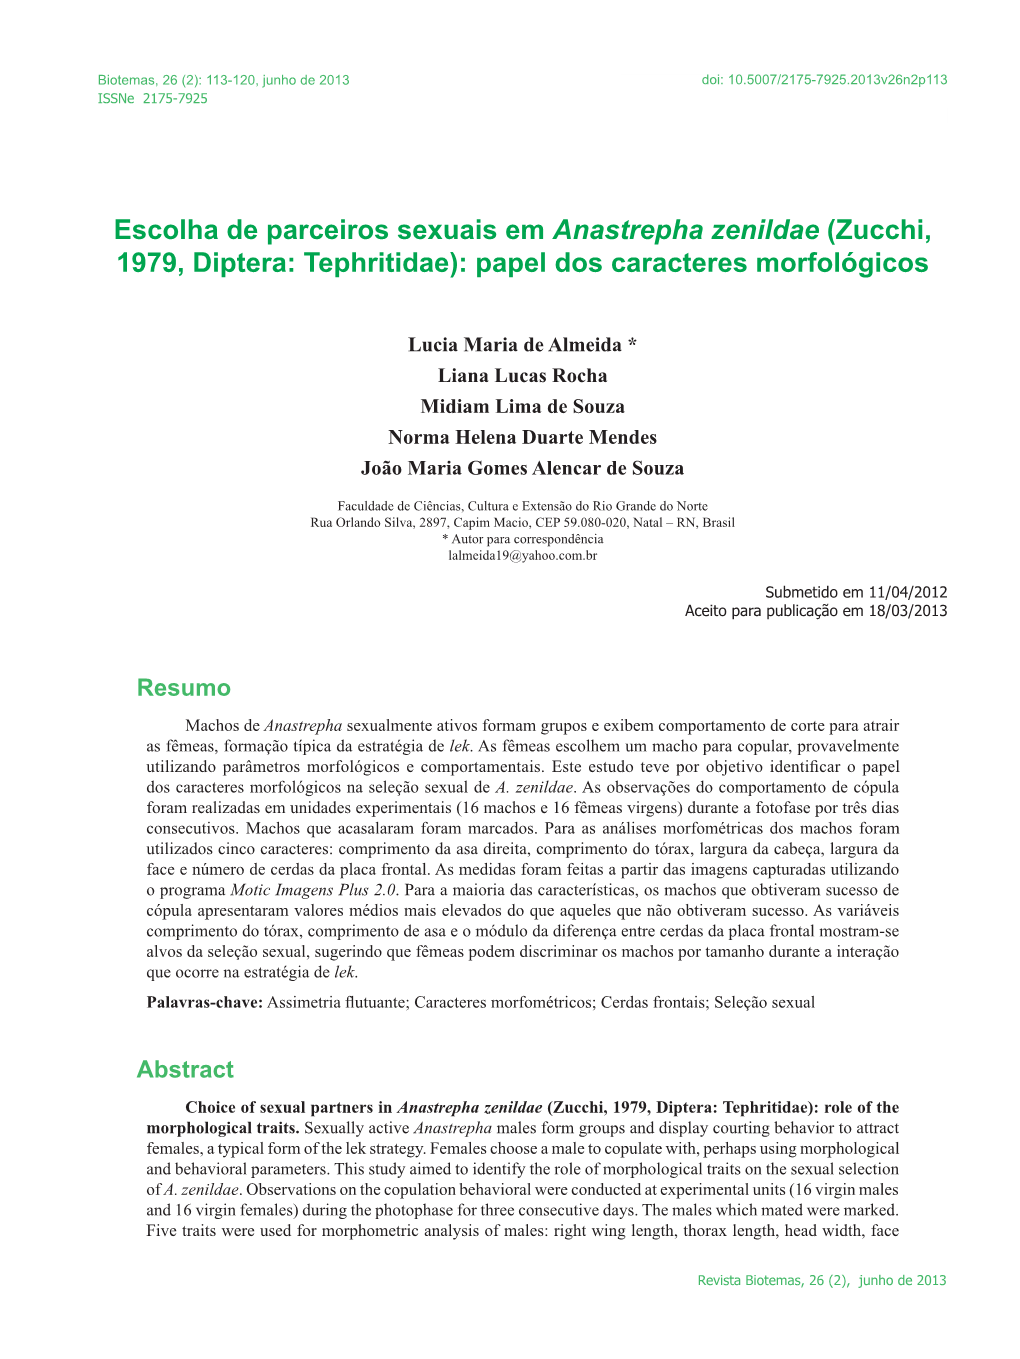 Escolha De Parceiros Sexuais Em Anastrepha Zenildae (Zucchi, 1979, Diptera: Tephritidae): Papel Dos Caracteres Morfológicos